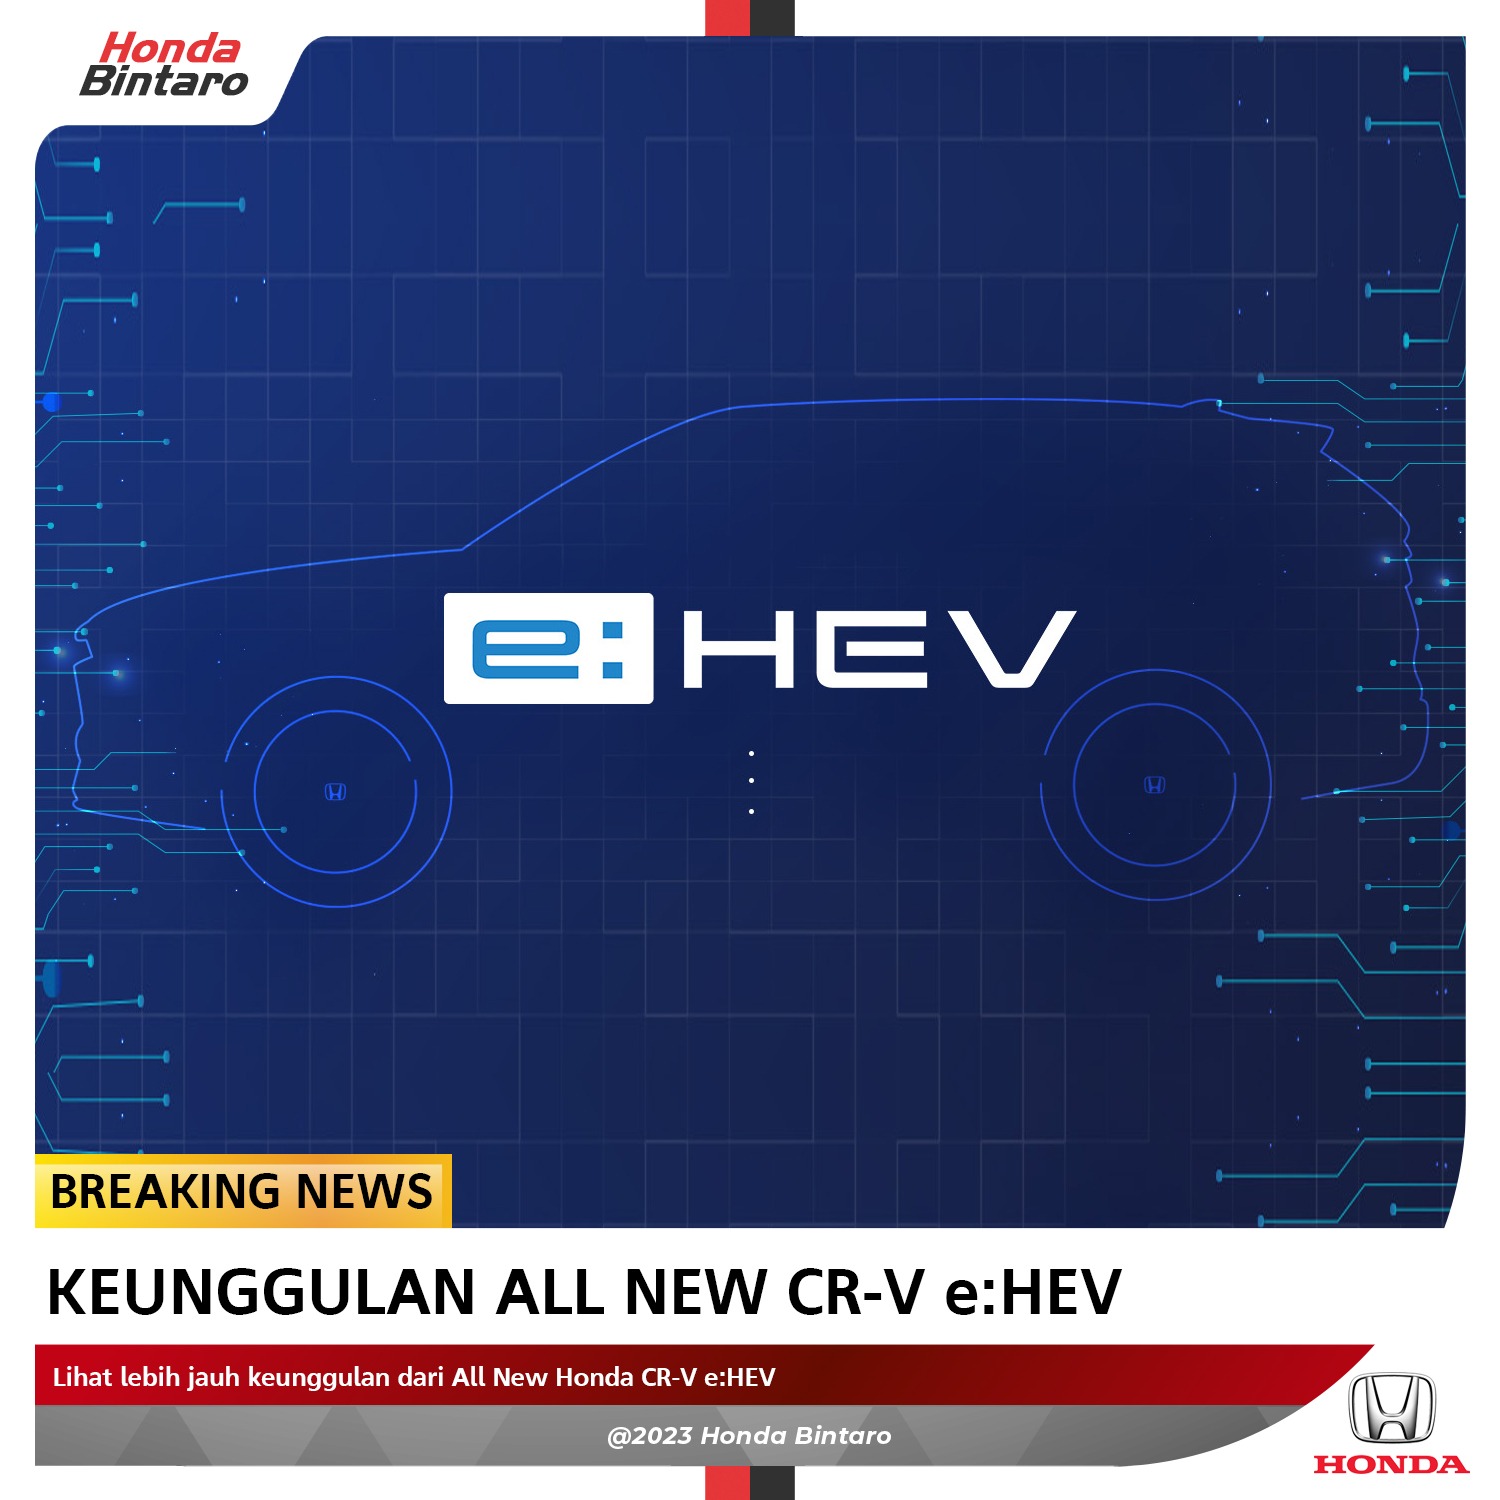 Keunggulan All New Honda CR-V e:HEV